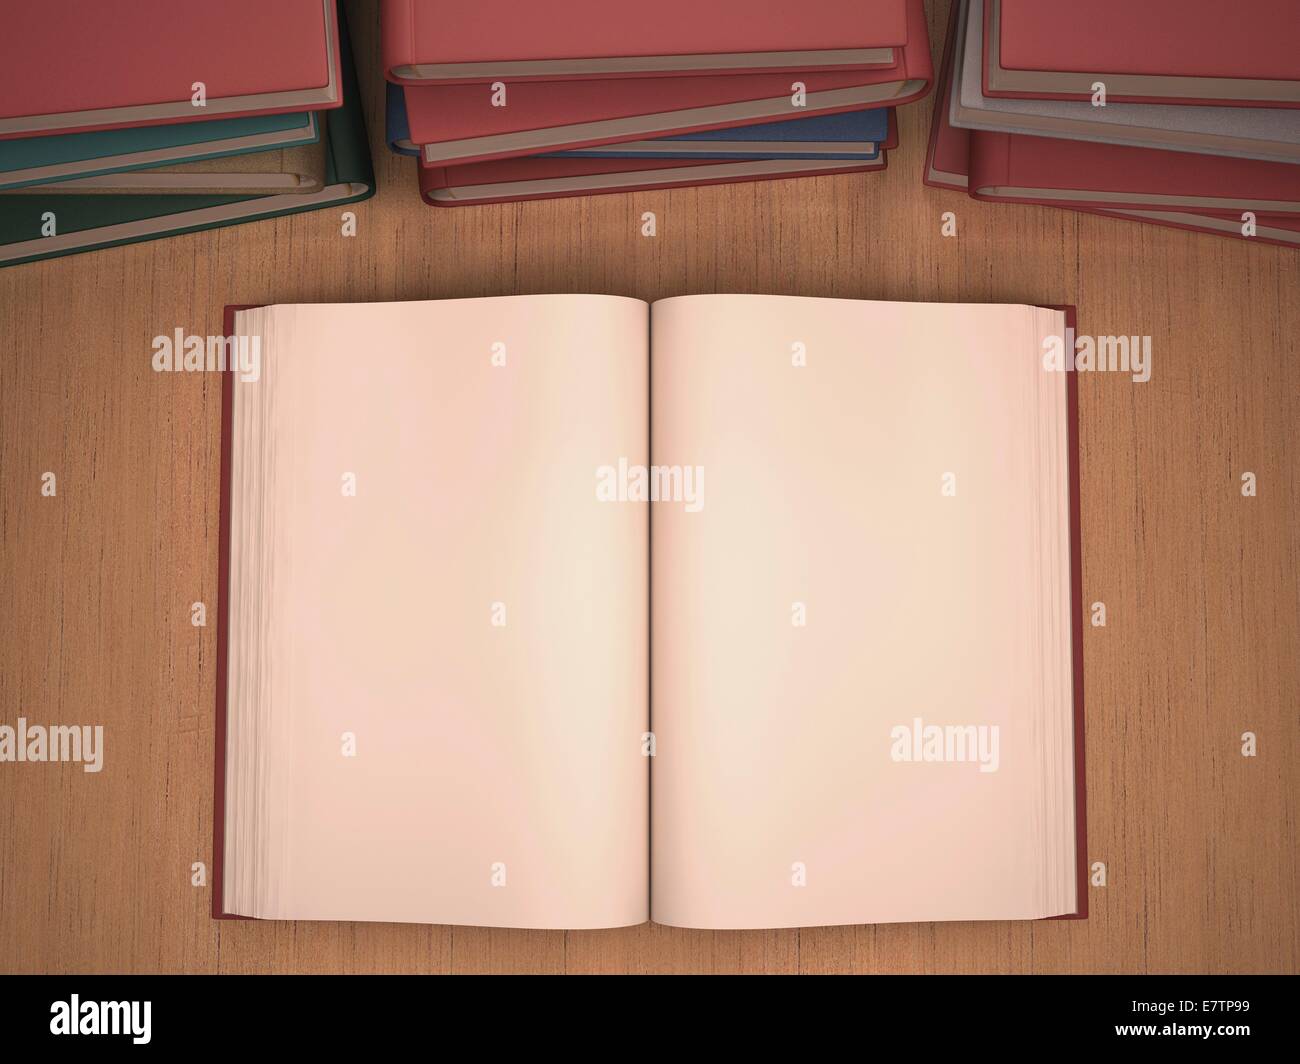 Open book, computer artwork. Stock Photo